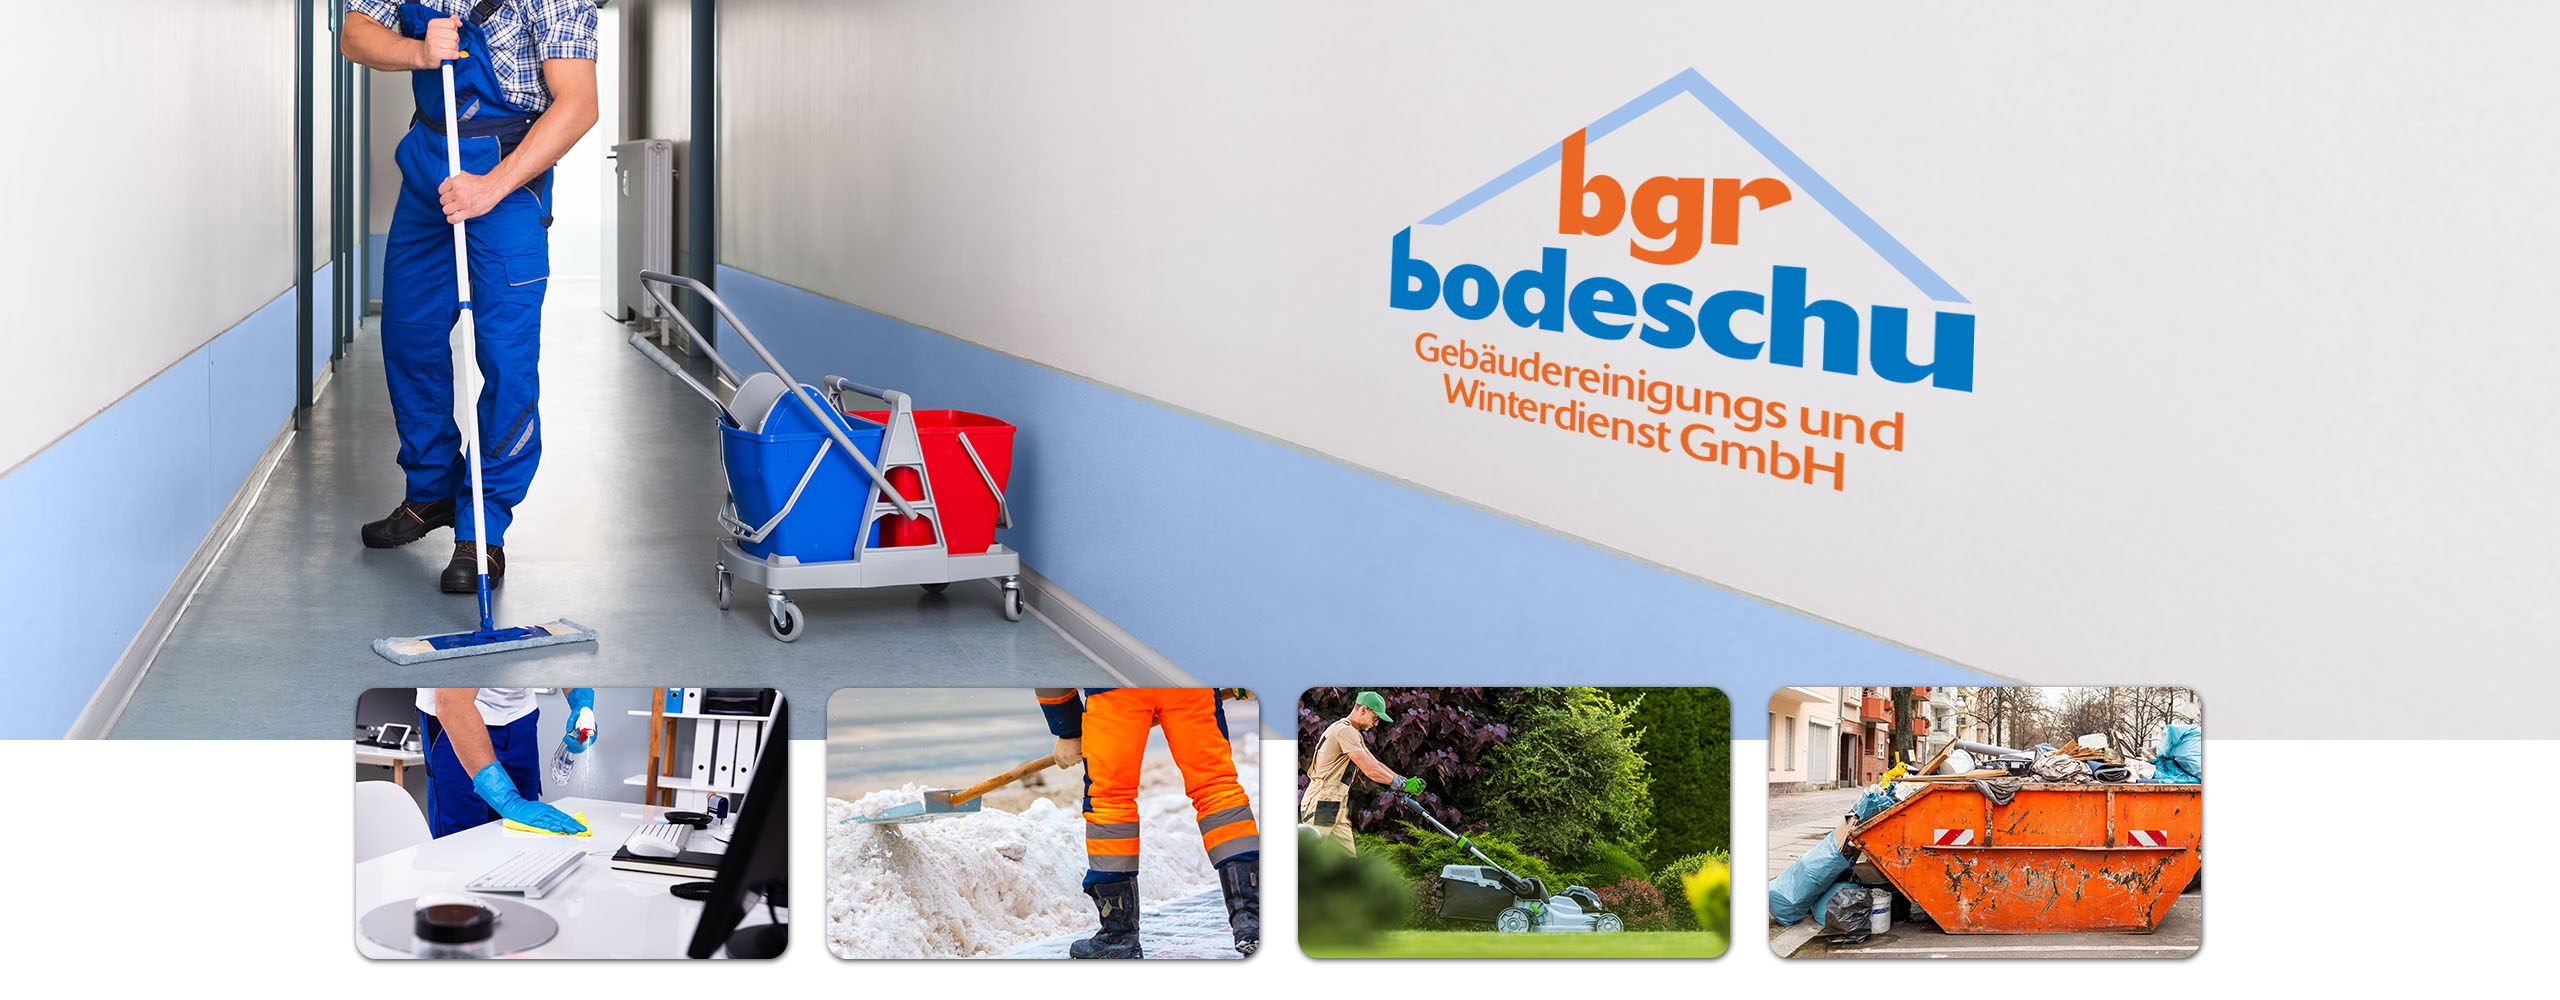 bgr-bodeschu-gebaeudereinigung-winterdienst-hauswartarbeiten-berlin-brandenburg-heroshot-home-2560x1000